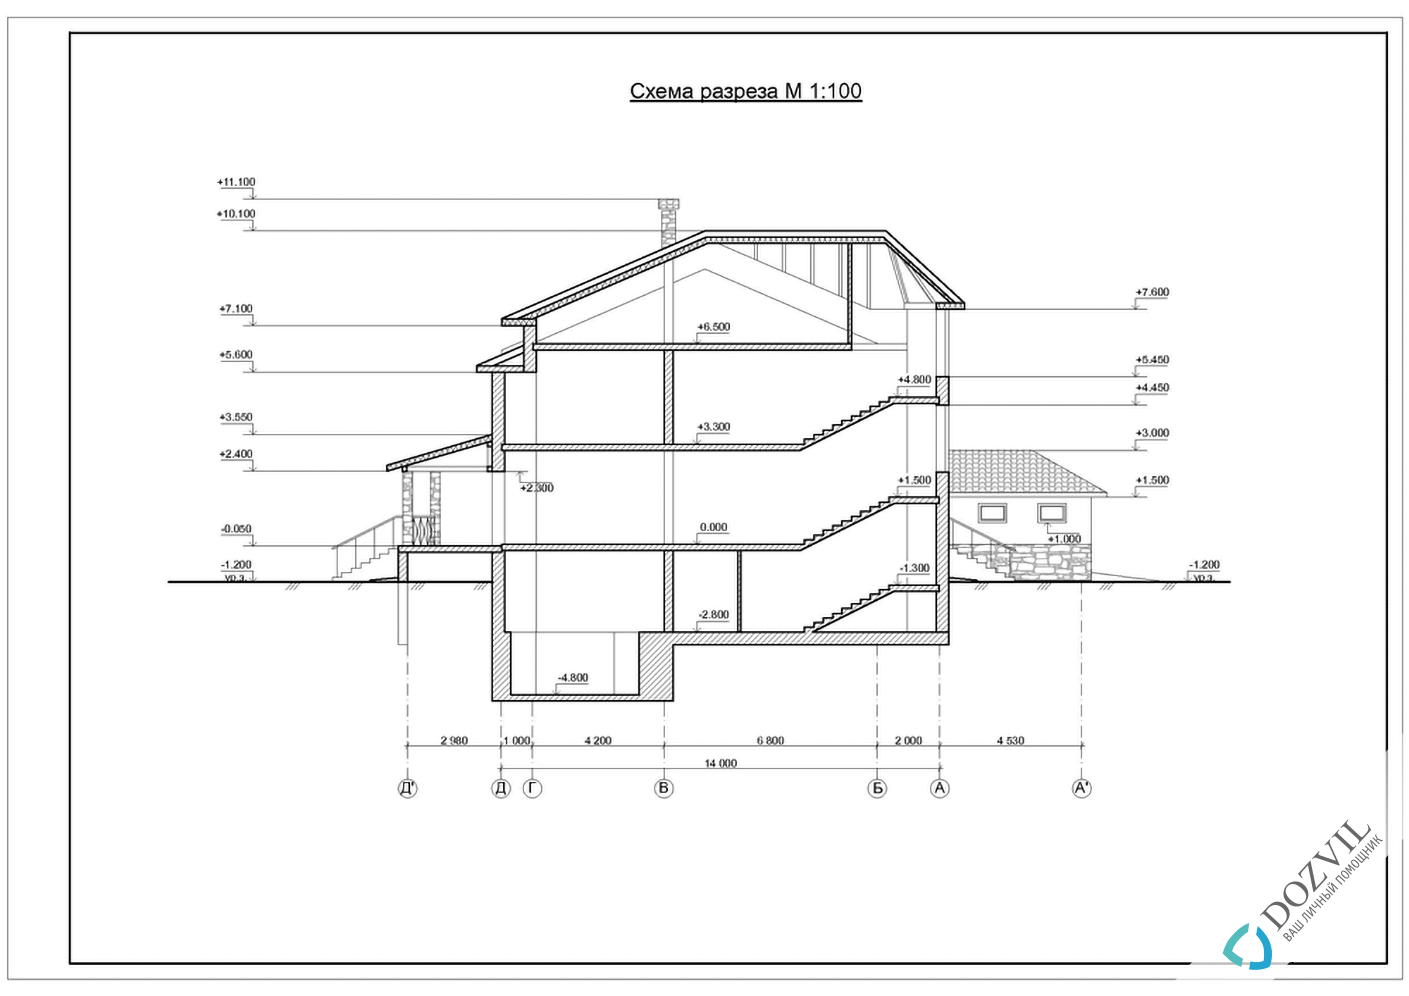 Оформление гаража> Гараж на участке рядом с жилым или садовым домом > 2 этап - Разработка эскиза намерений строительства